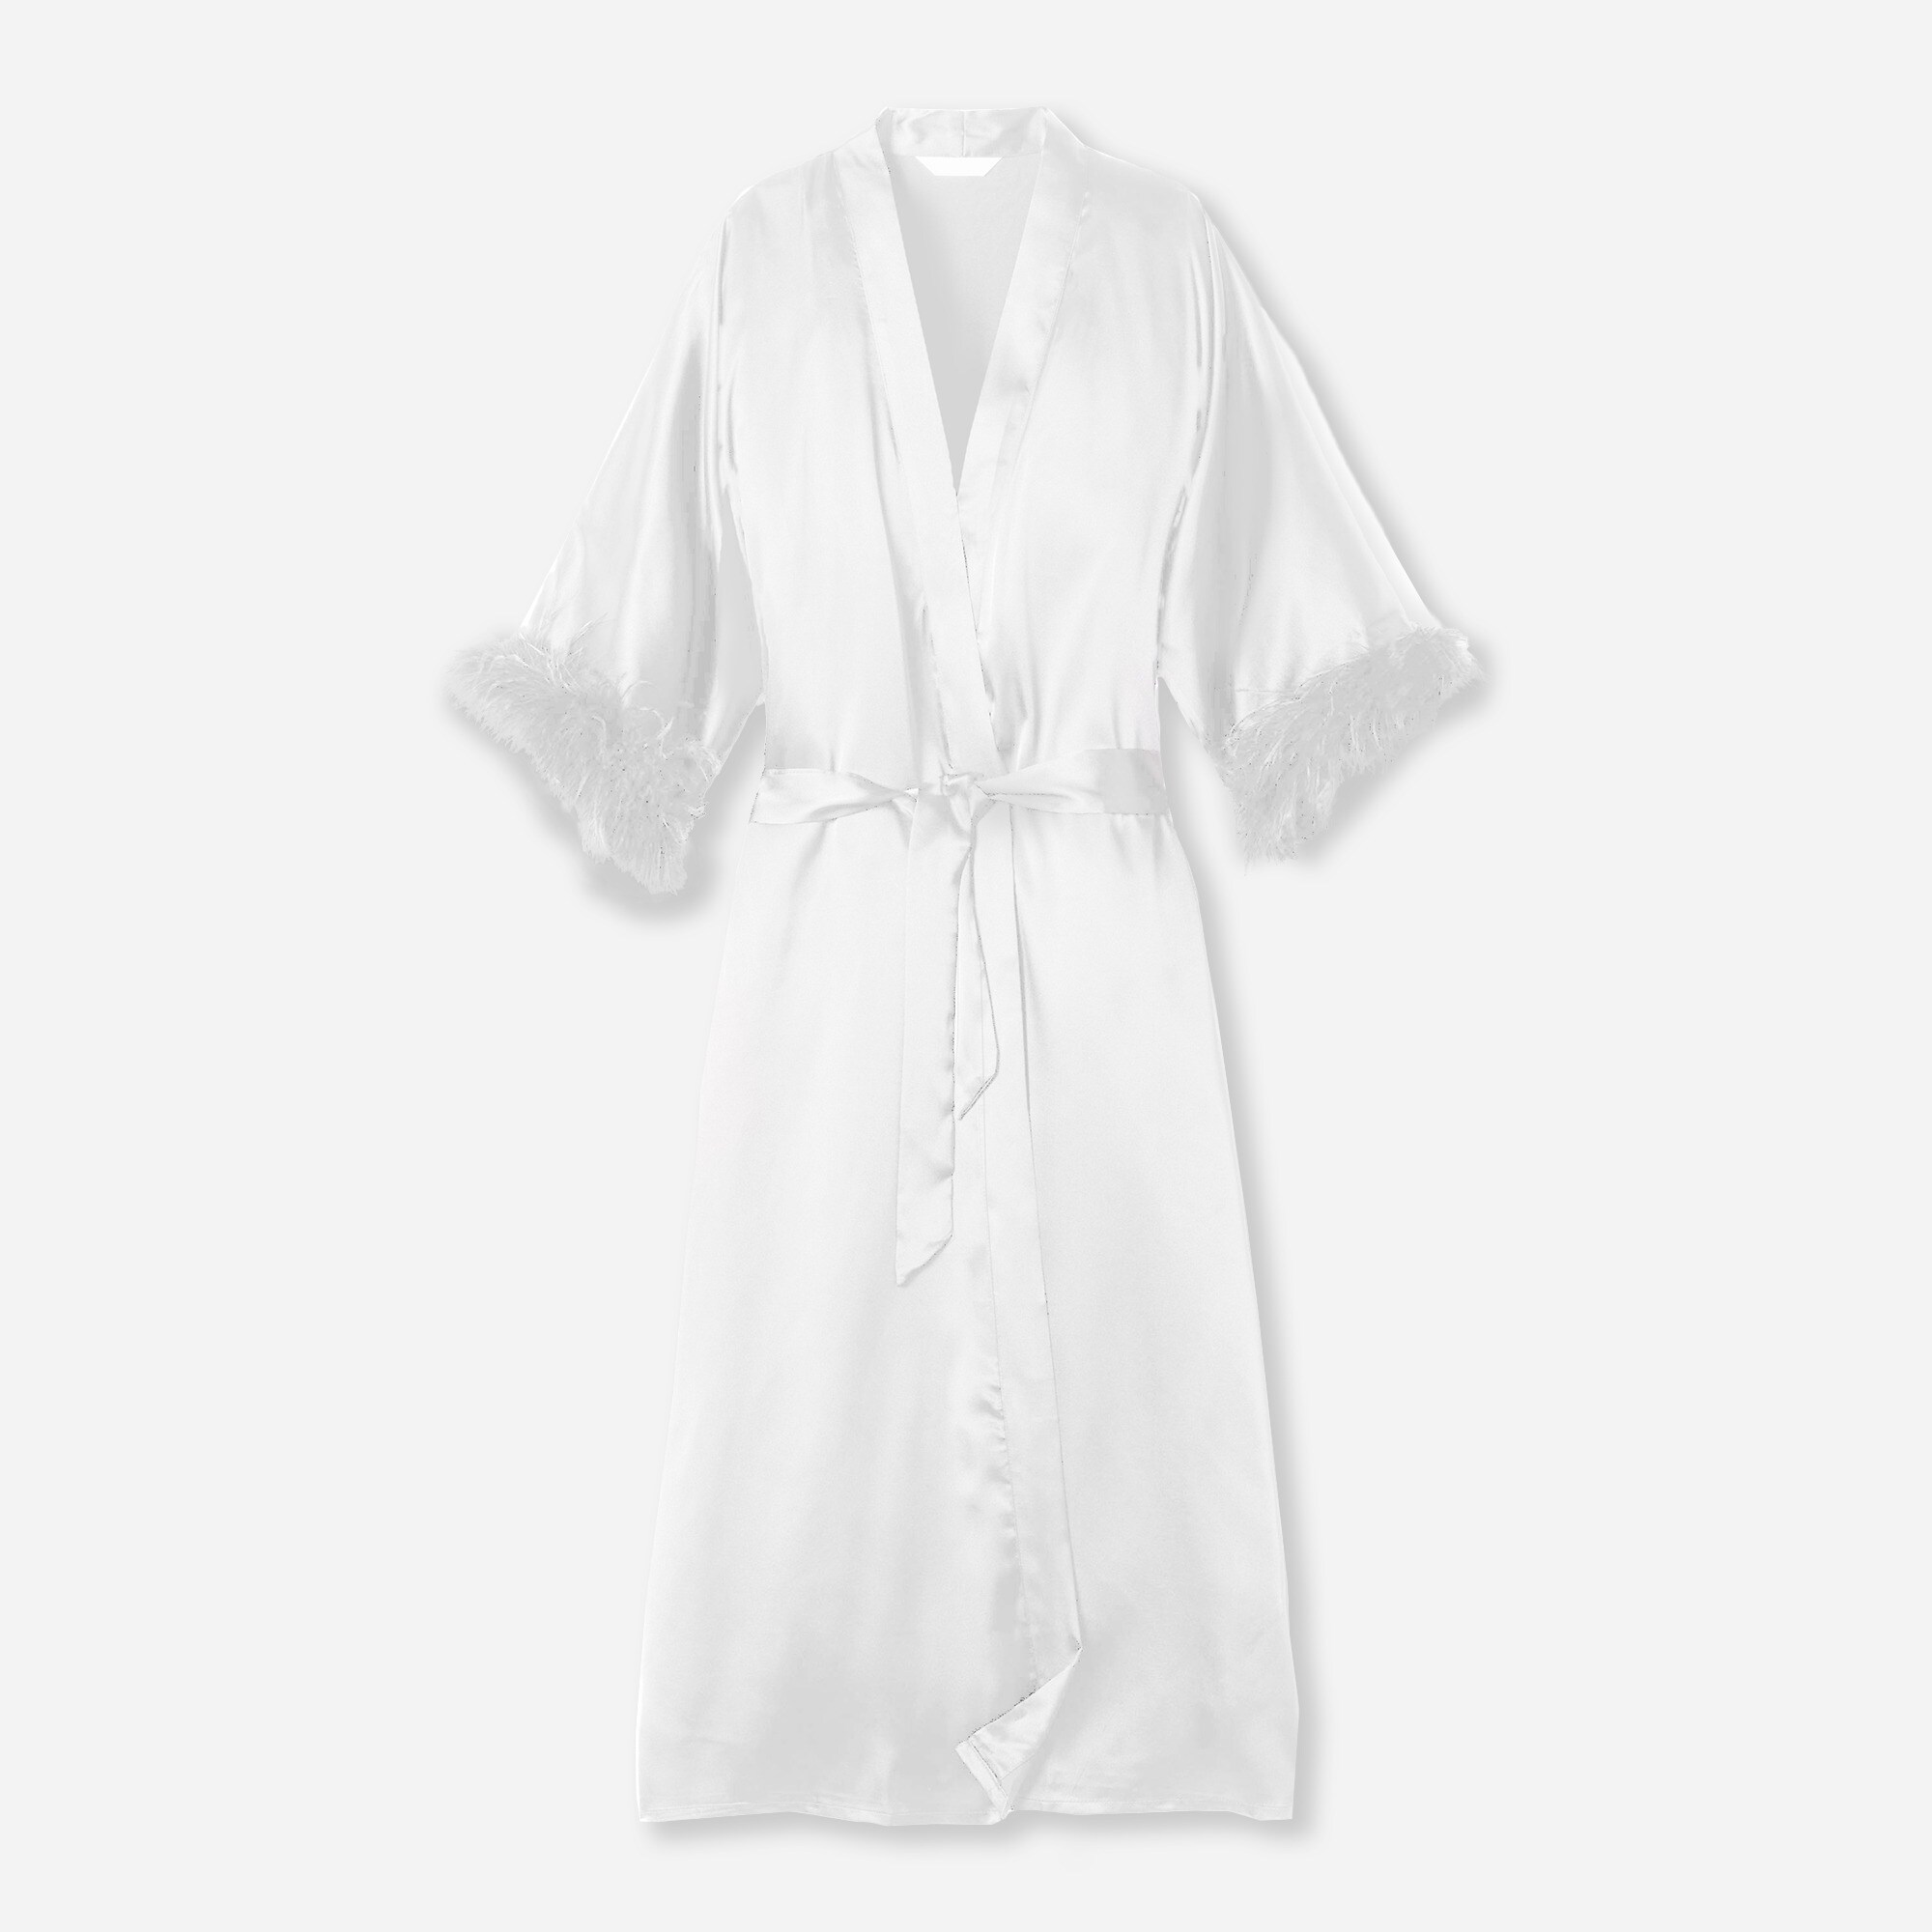 Petite Plume Men's Luxe Silk Pajama